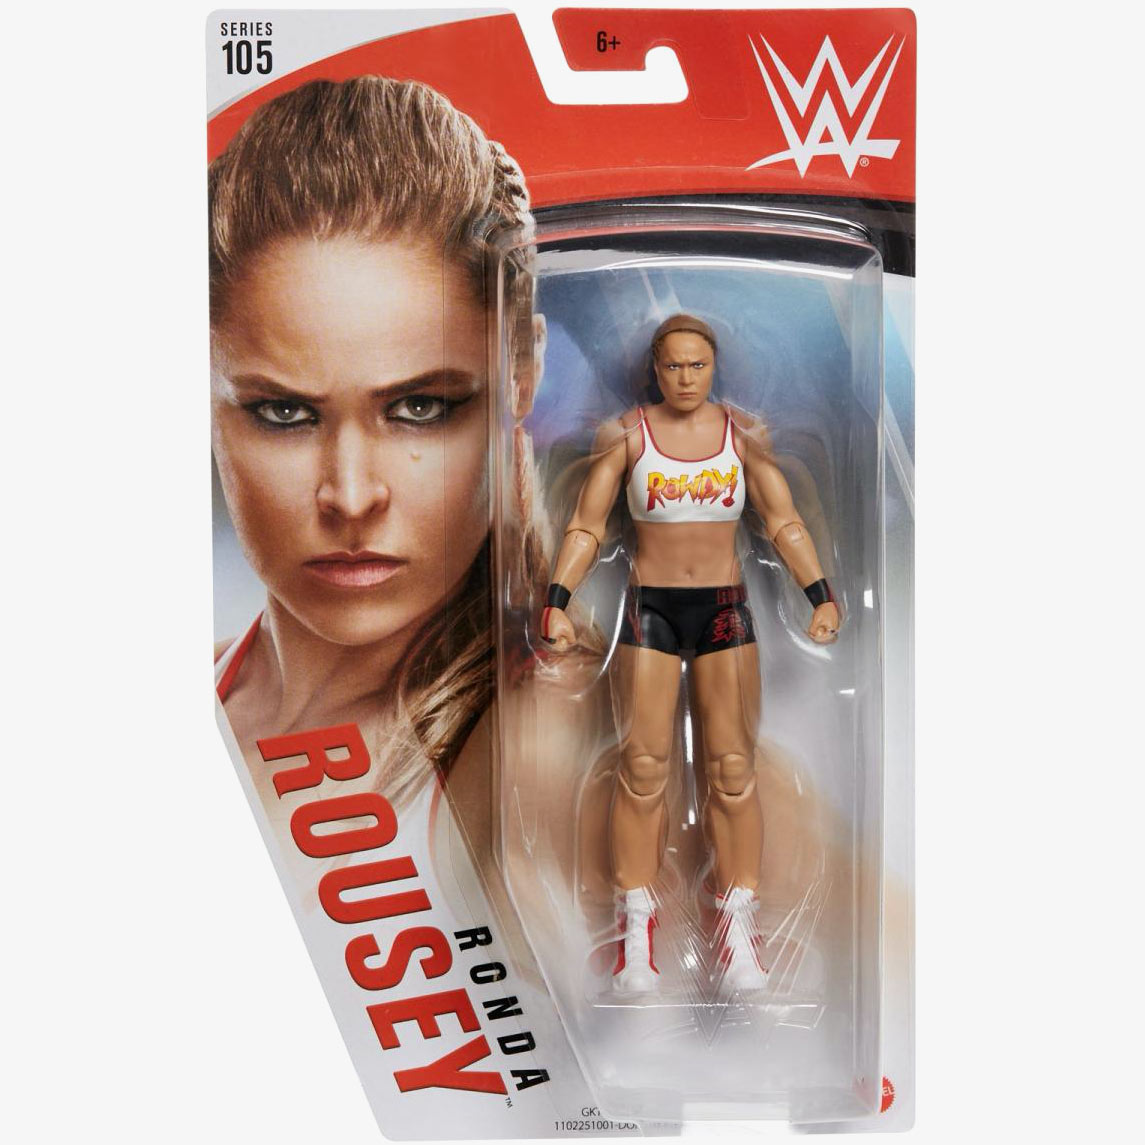 Ronda Rousey - WWE Basic Series #105